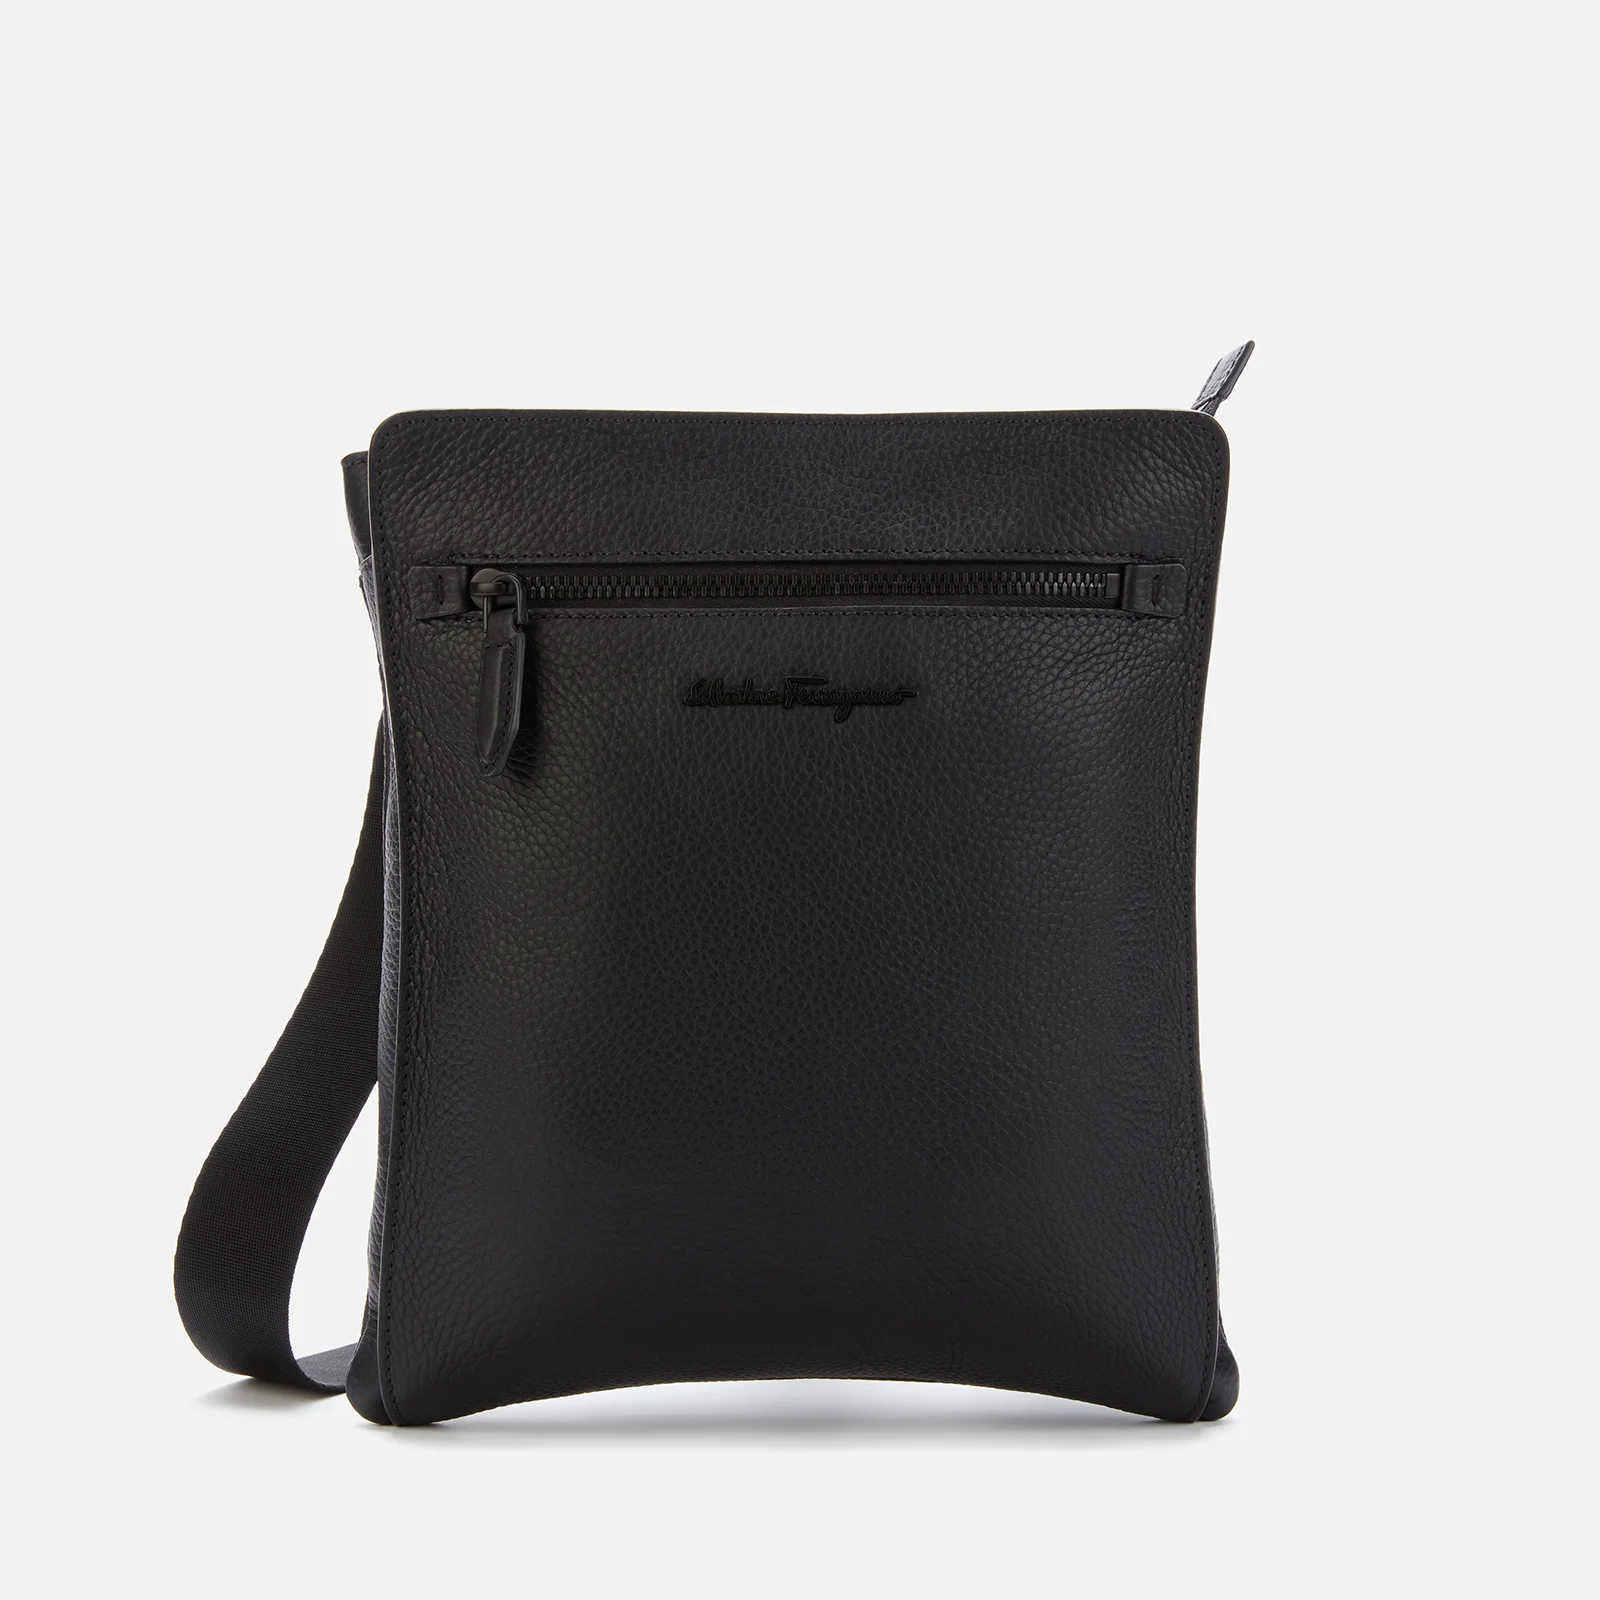 Ferragamo Men's Firenze Shoulder Bag - Black Image 1